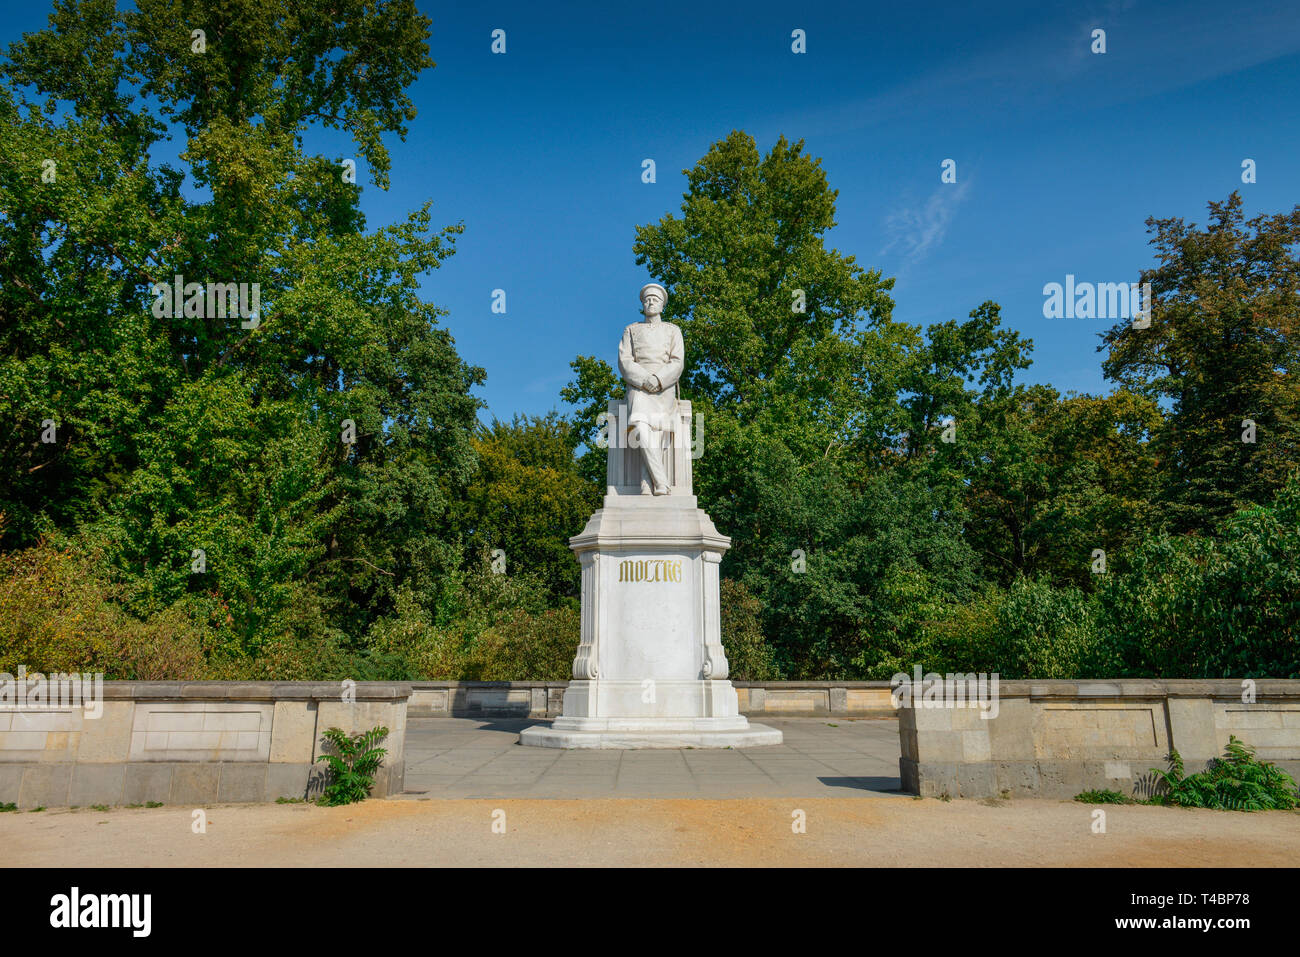 Denkmal, Helmuth Karl Bernhard von Moltke, Grosser Stern, Tiergarten, Mitte, Berlin, Deutschland Stock Photo